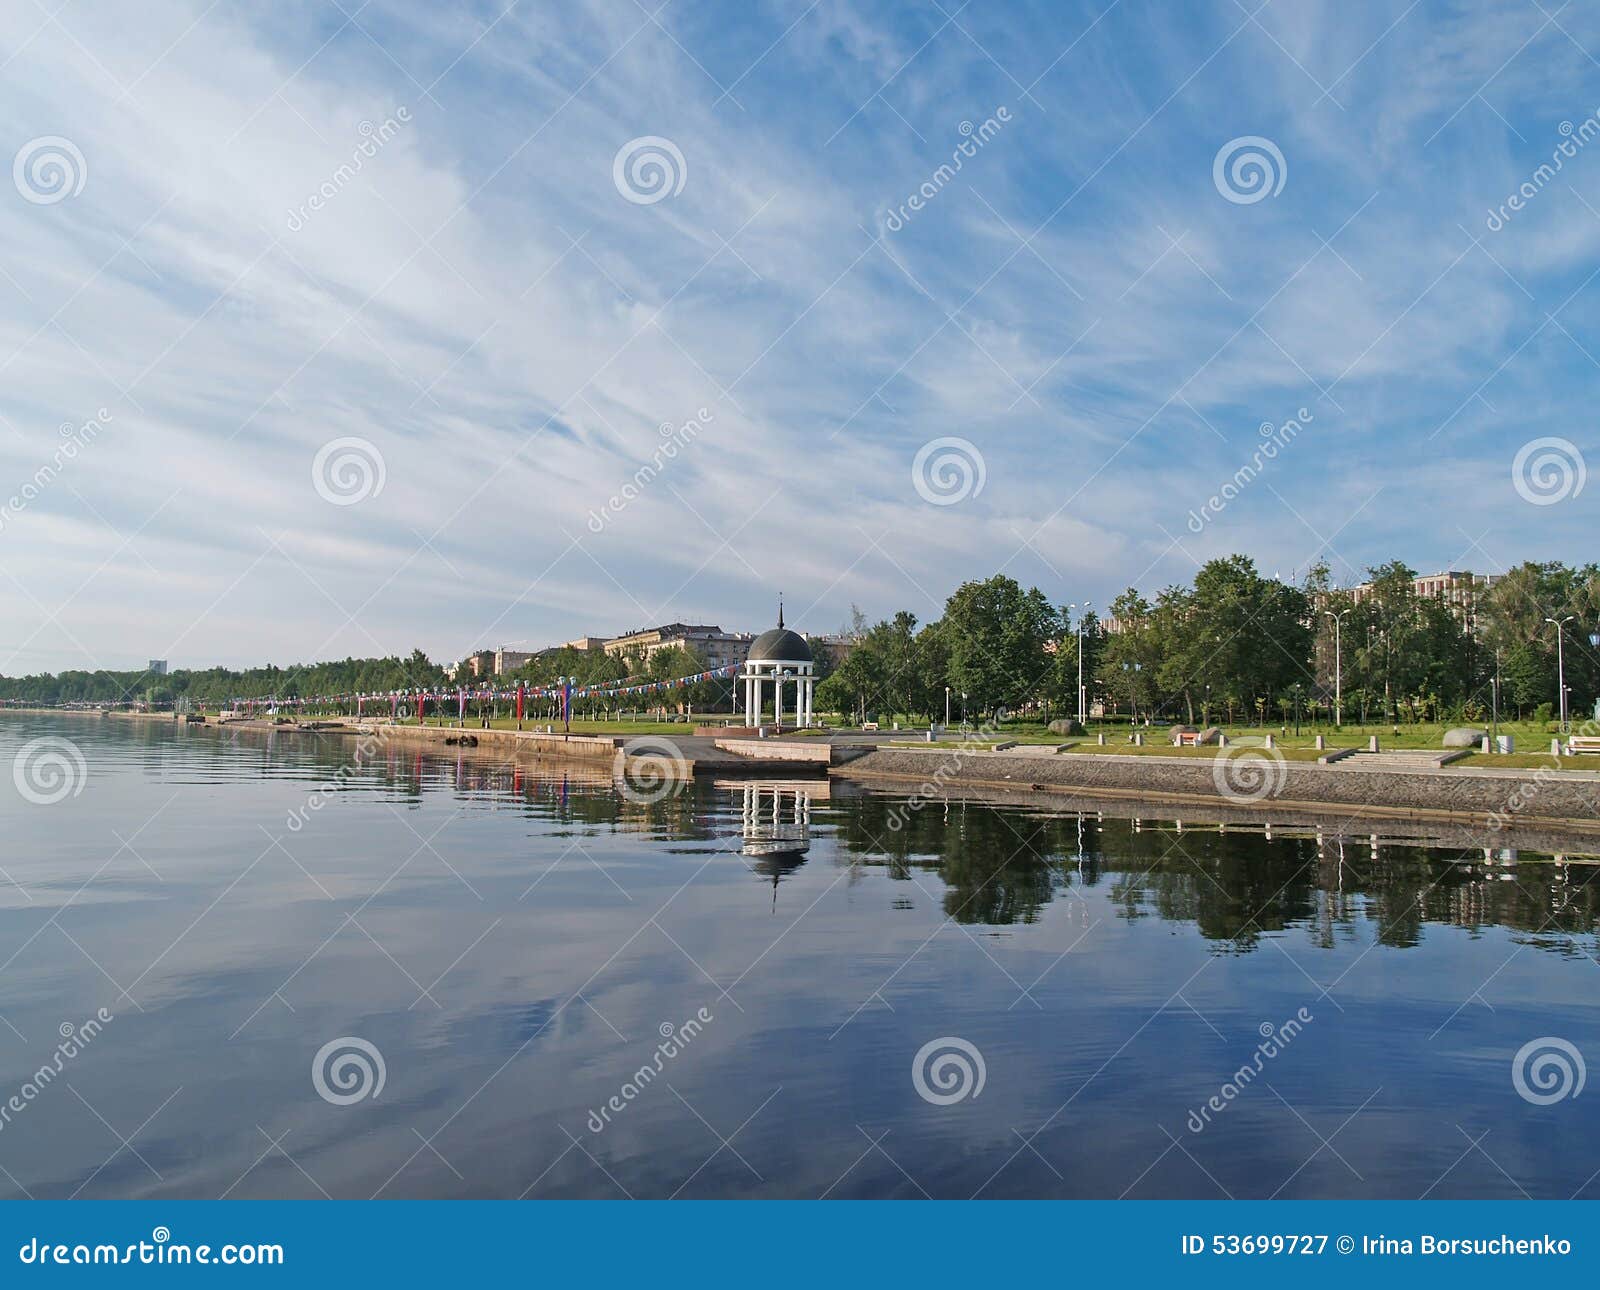 petrozavodsk. lake onega embankment in summer